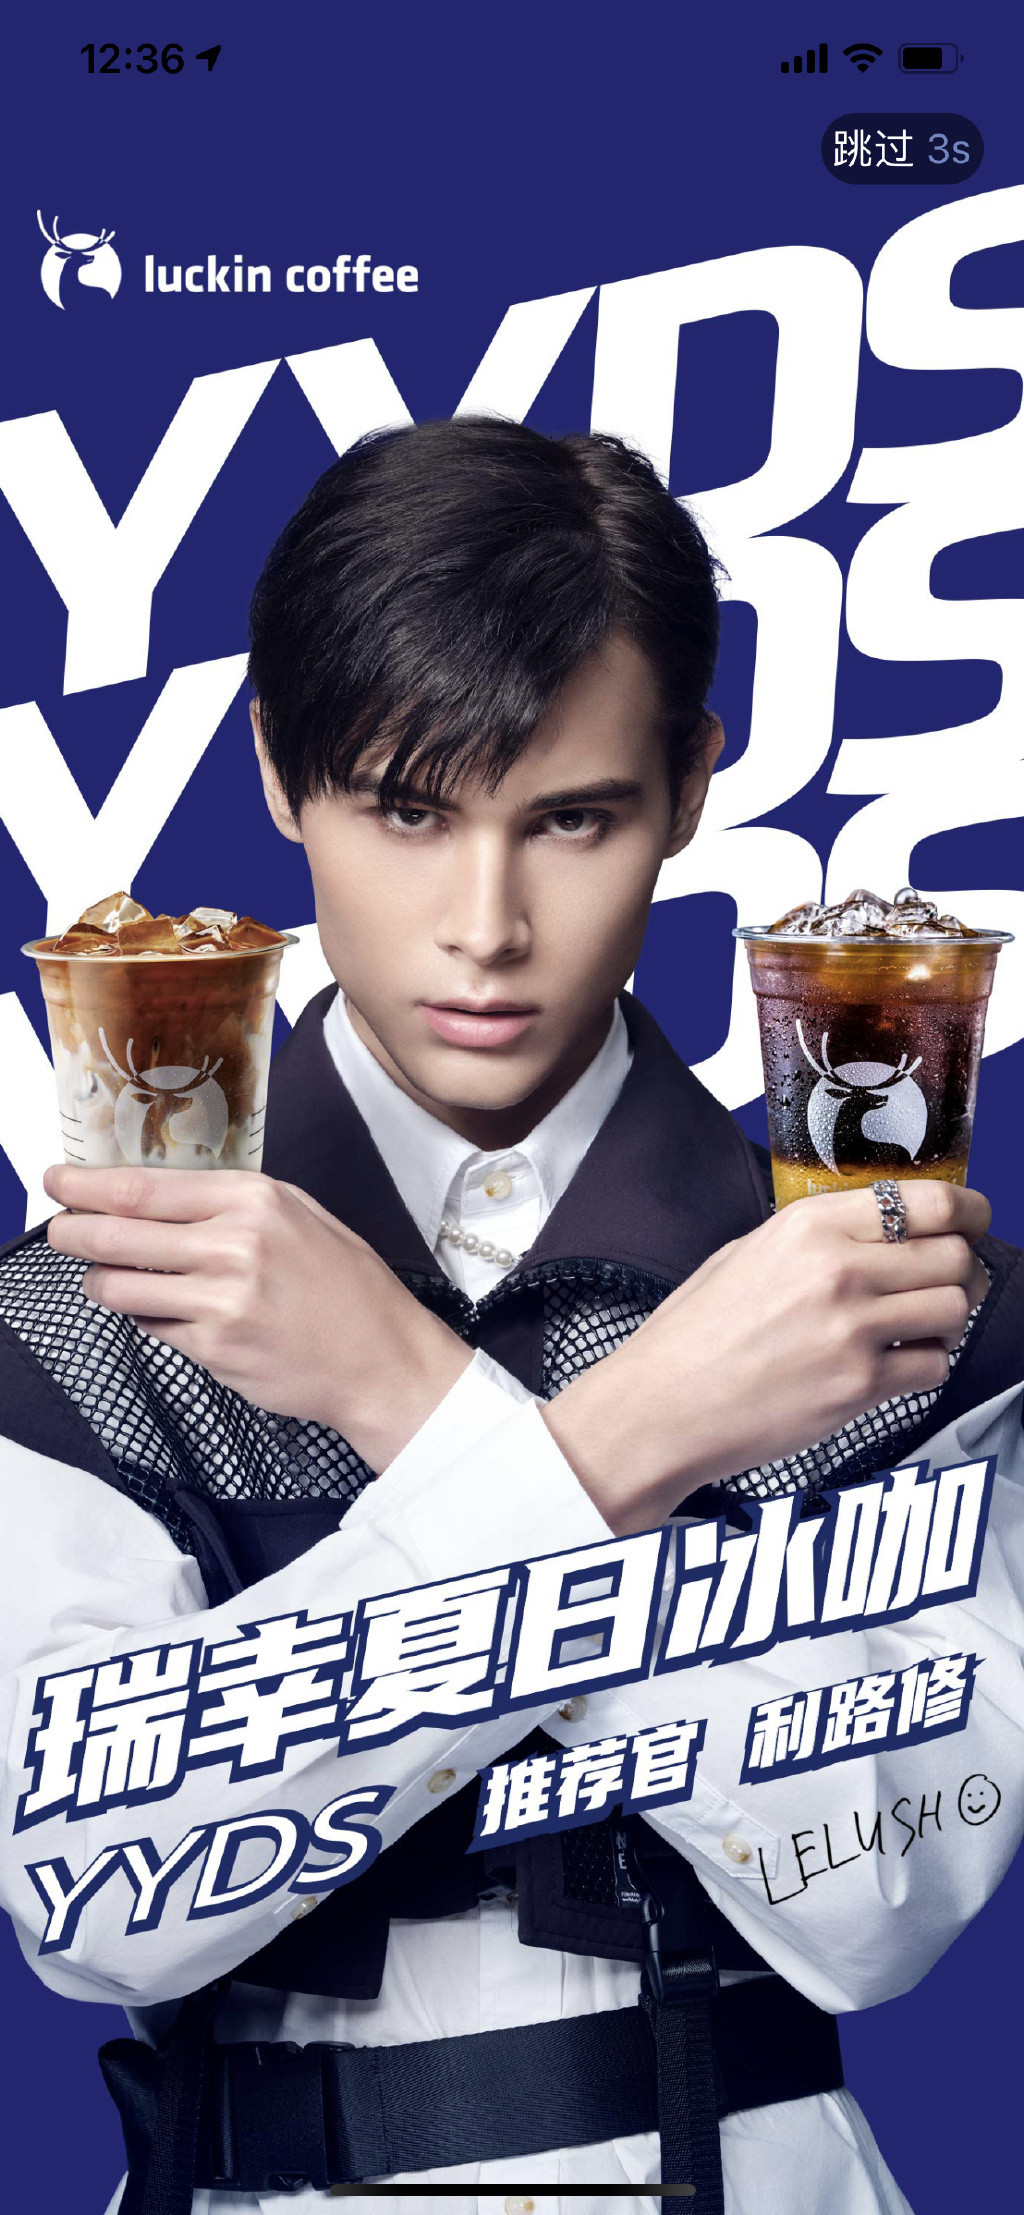 利路修成为中国咖啡品牌代言人。